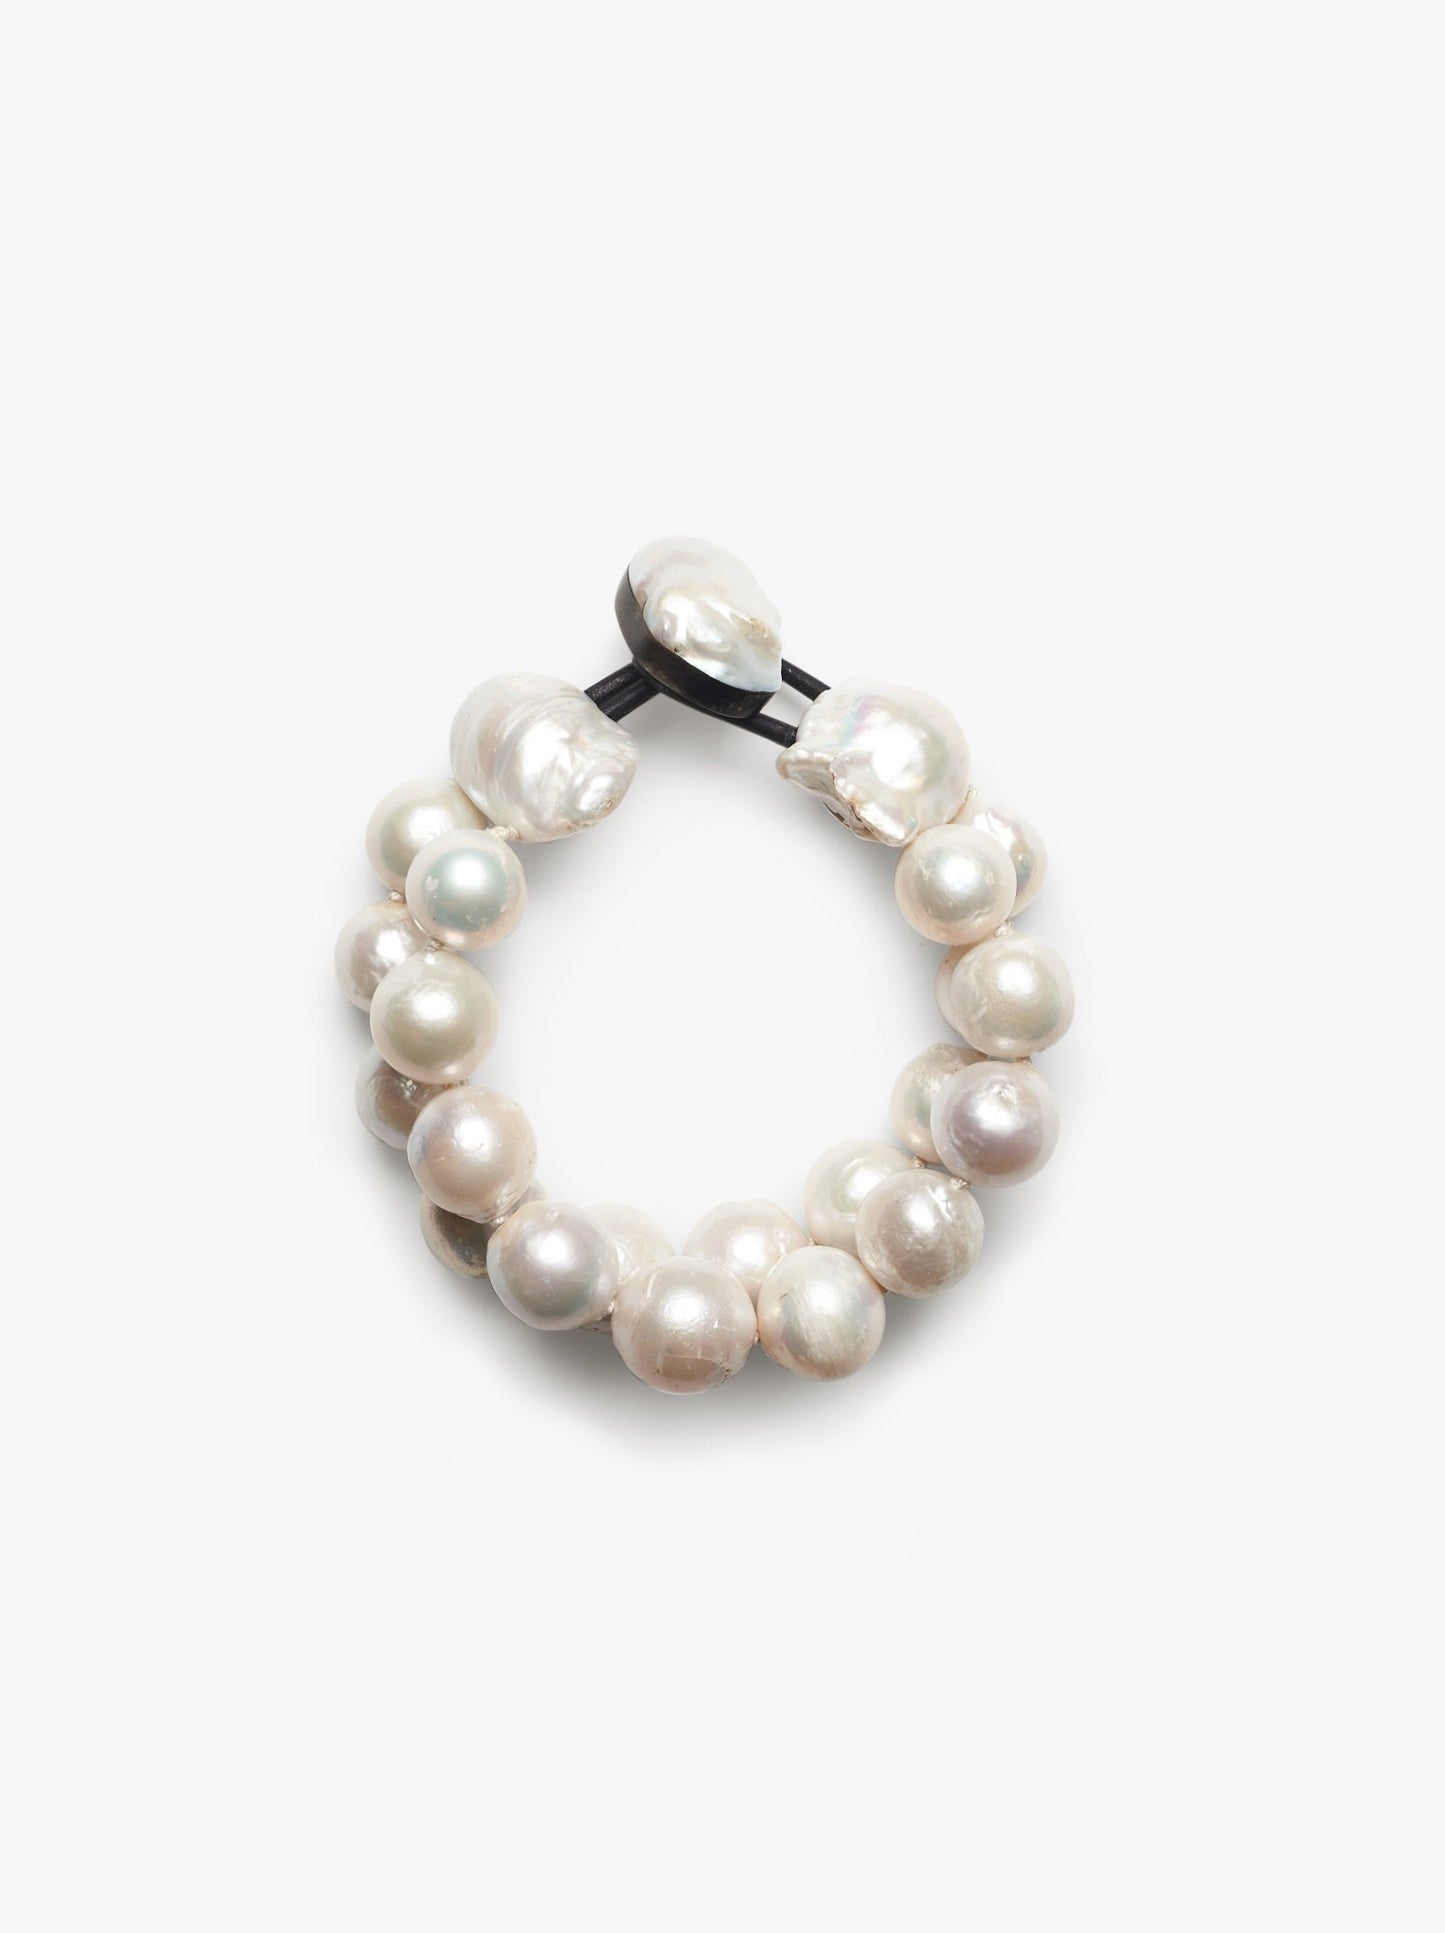 Bracelet in pearls - 2 strands